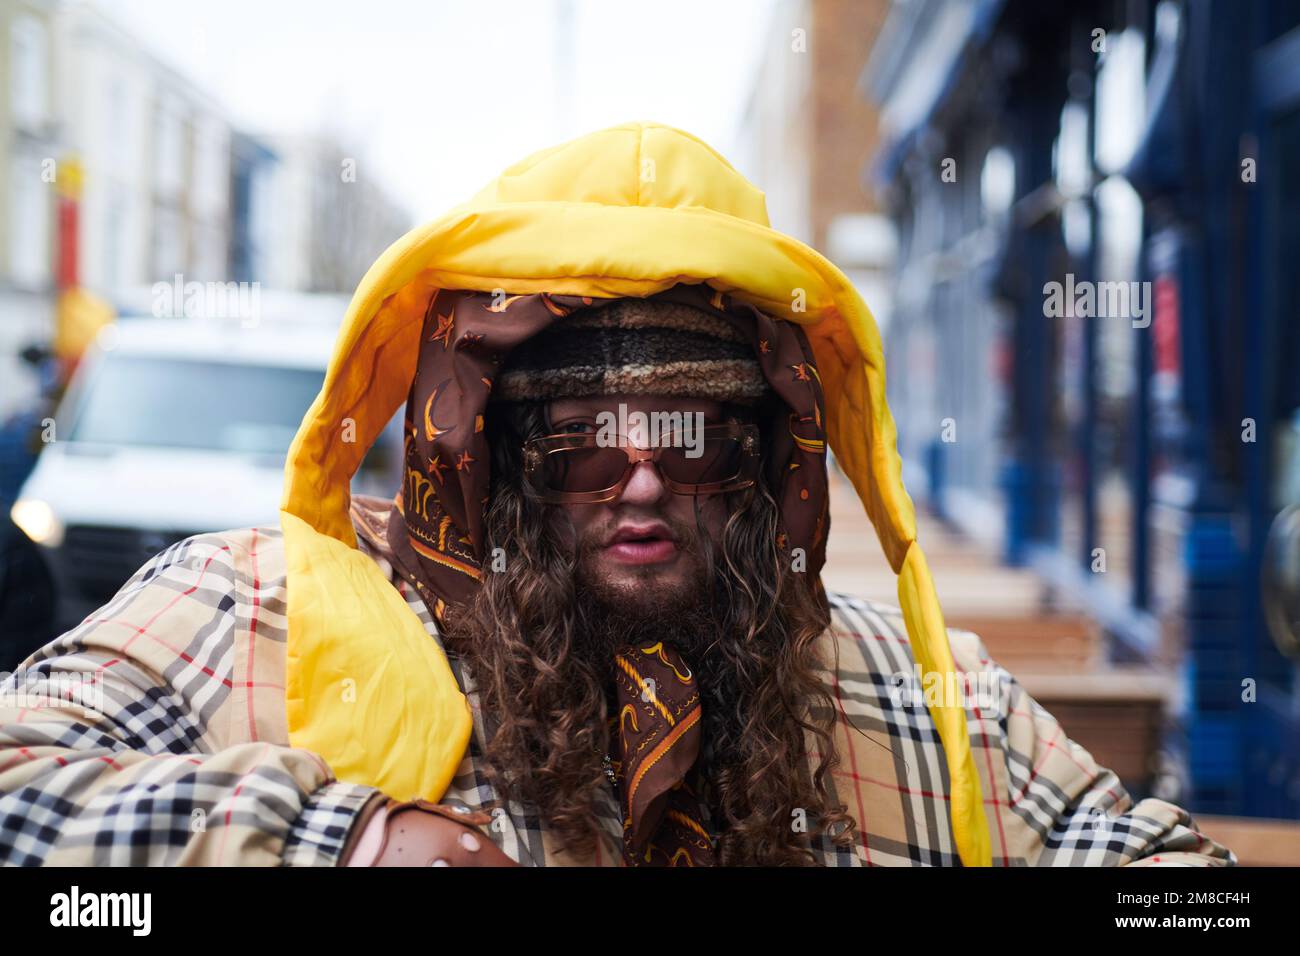 Portrait d'un homme aux couleurs funky dans les rues autour du marché de Portobello à Londres Banque D'Images